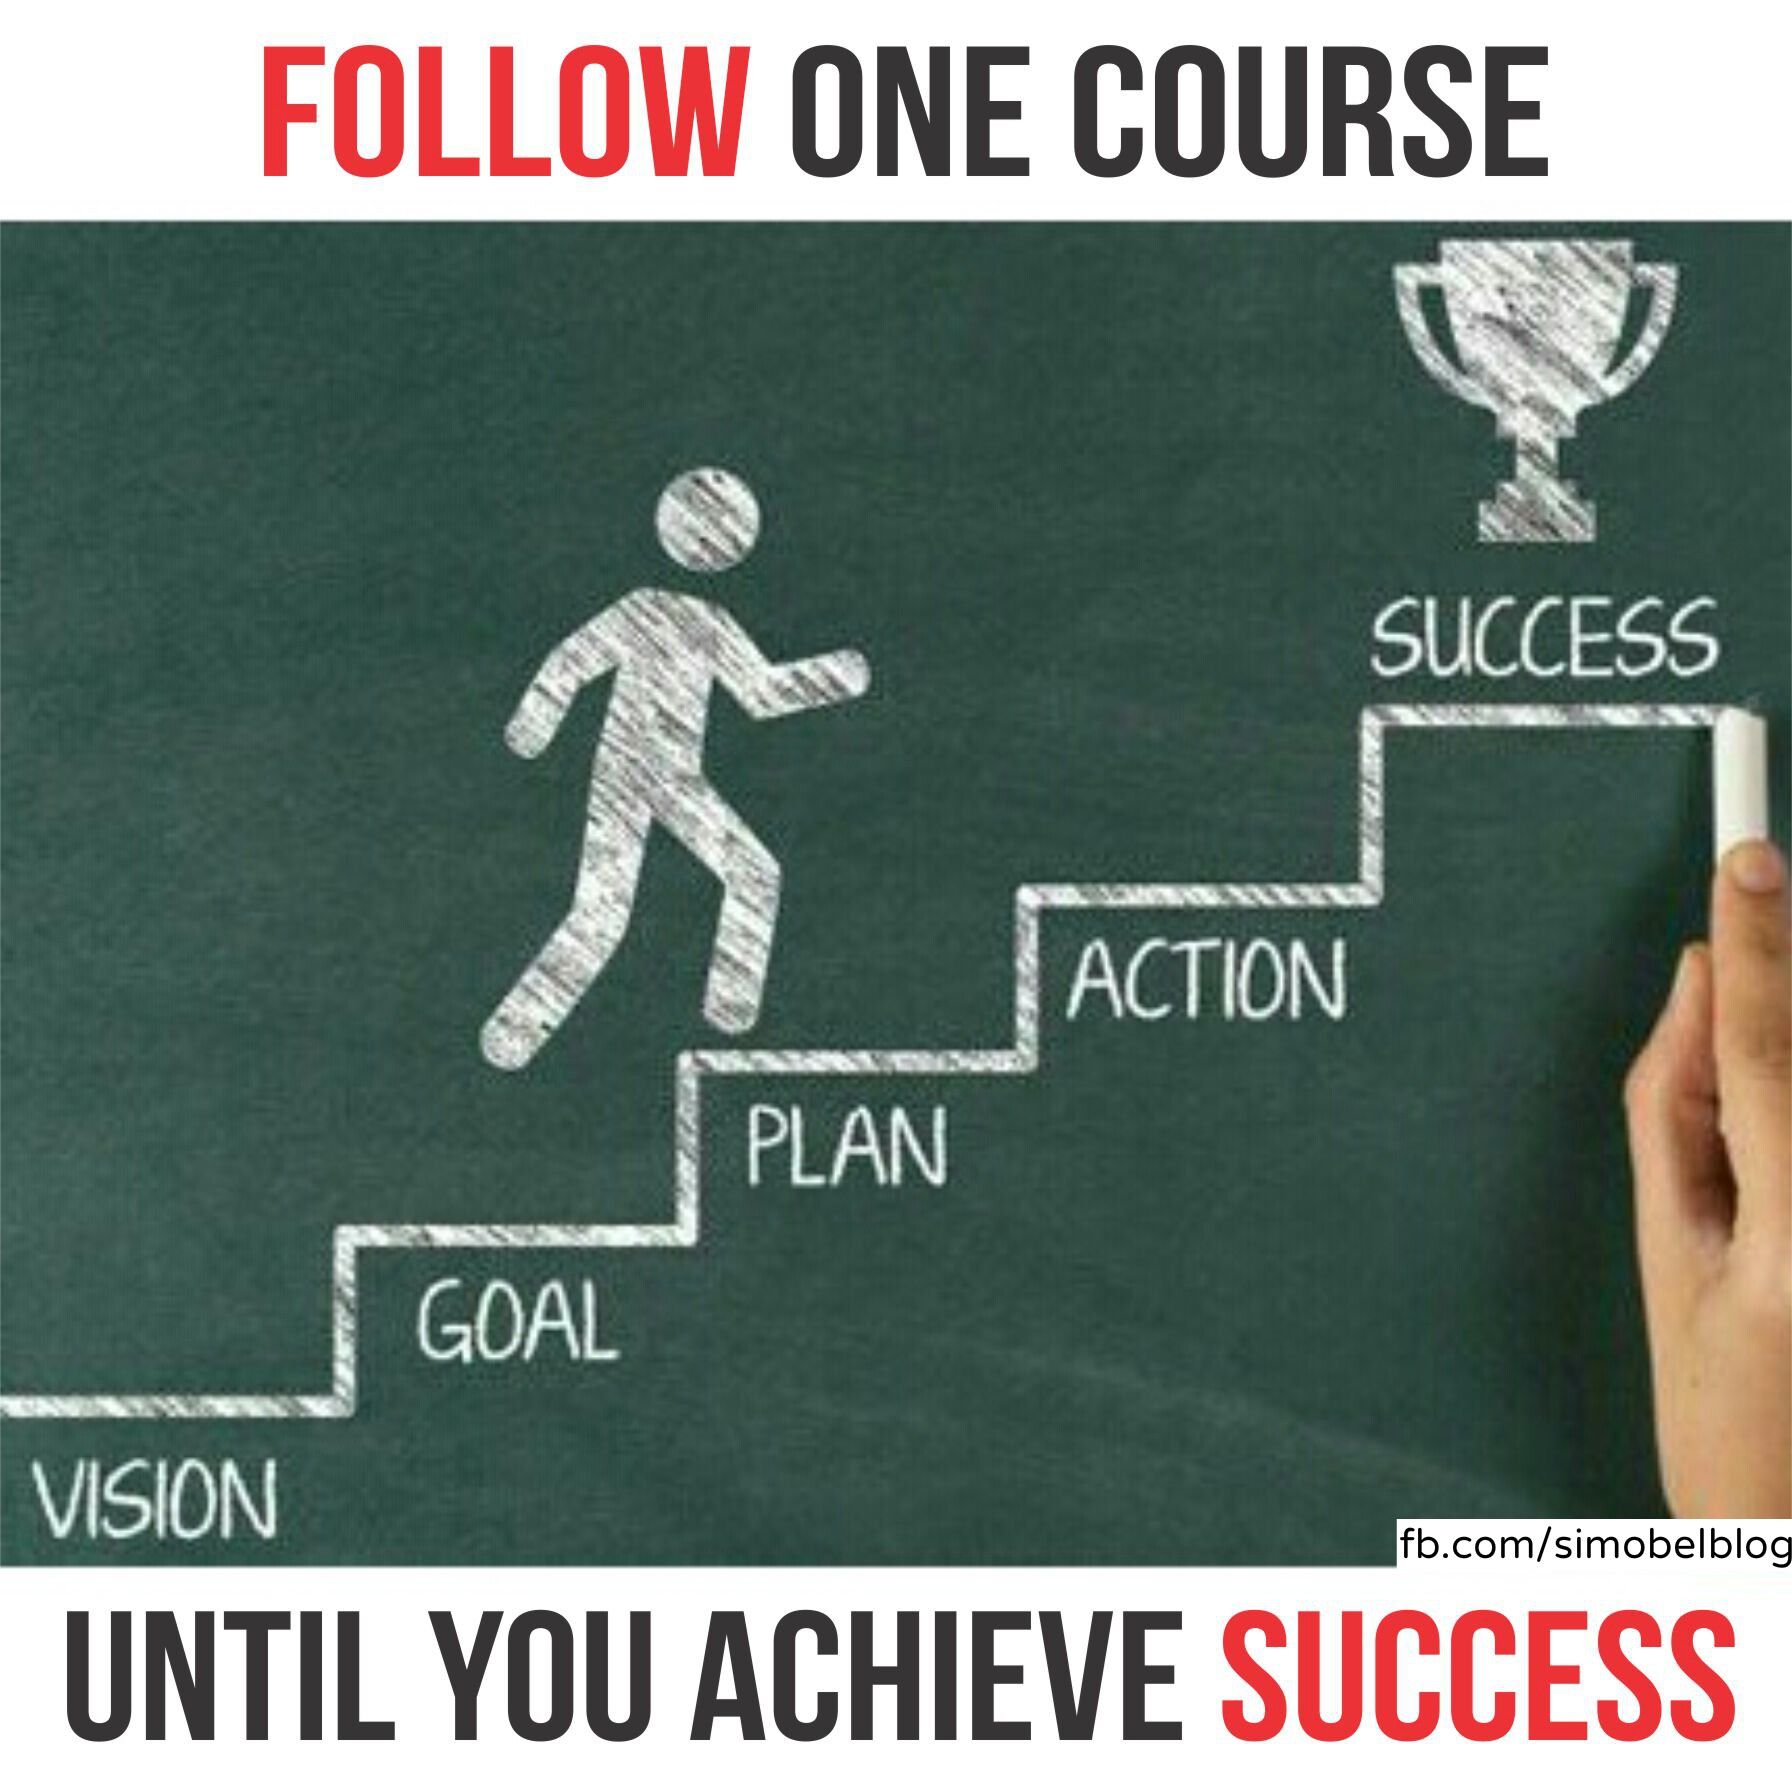 Follow one course until you achieve success